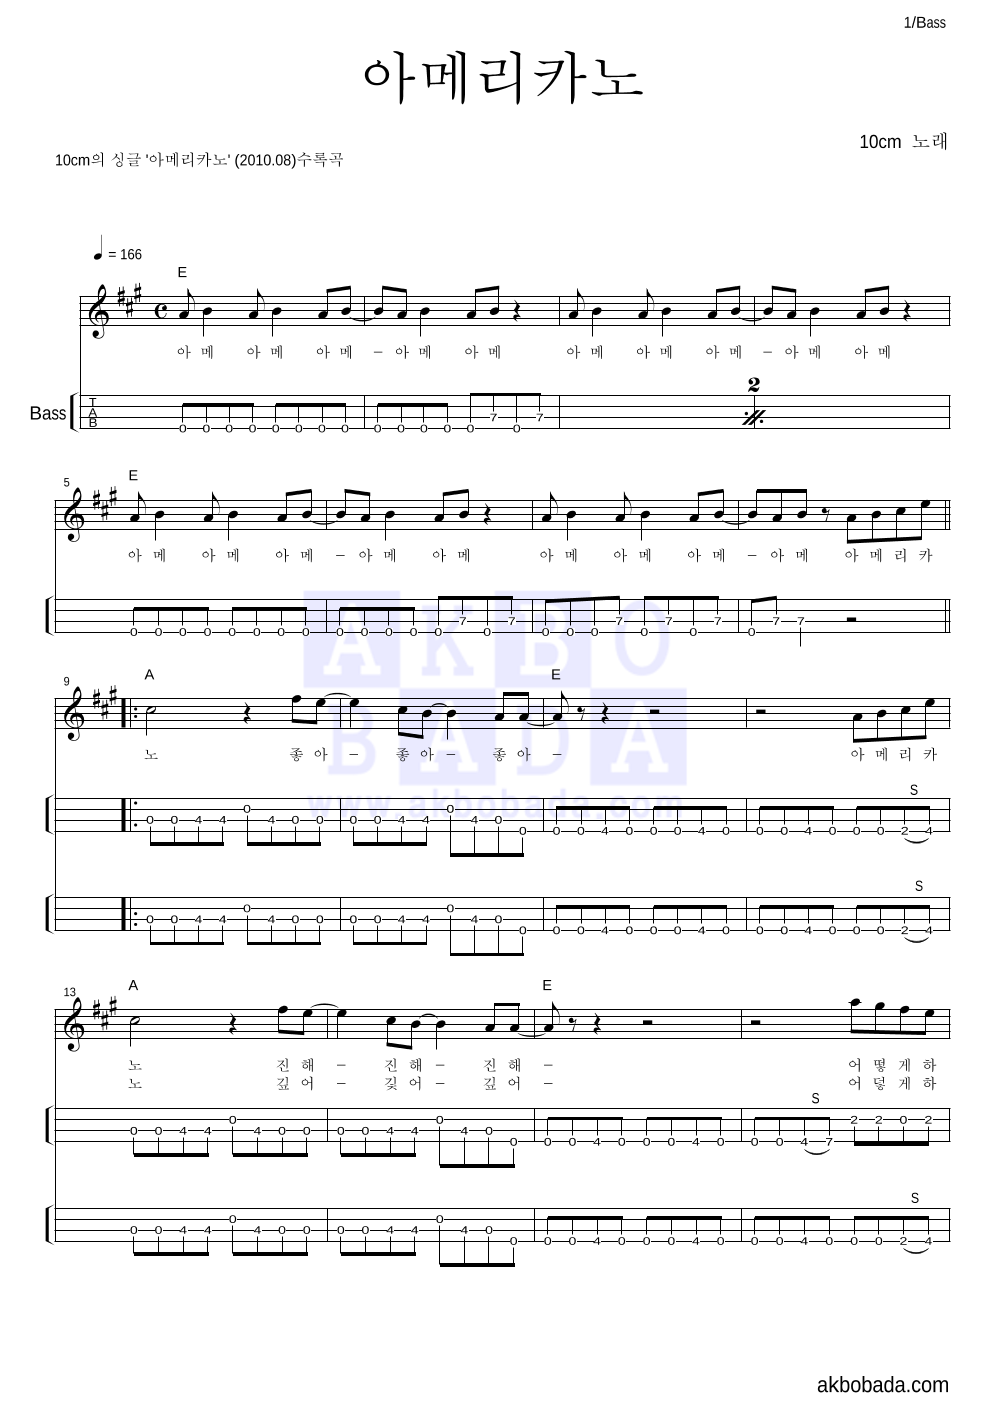 10CM - 아메리카노 베이스(Tab) 악보 